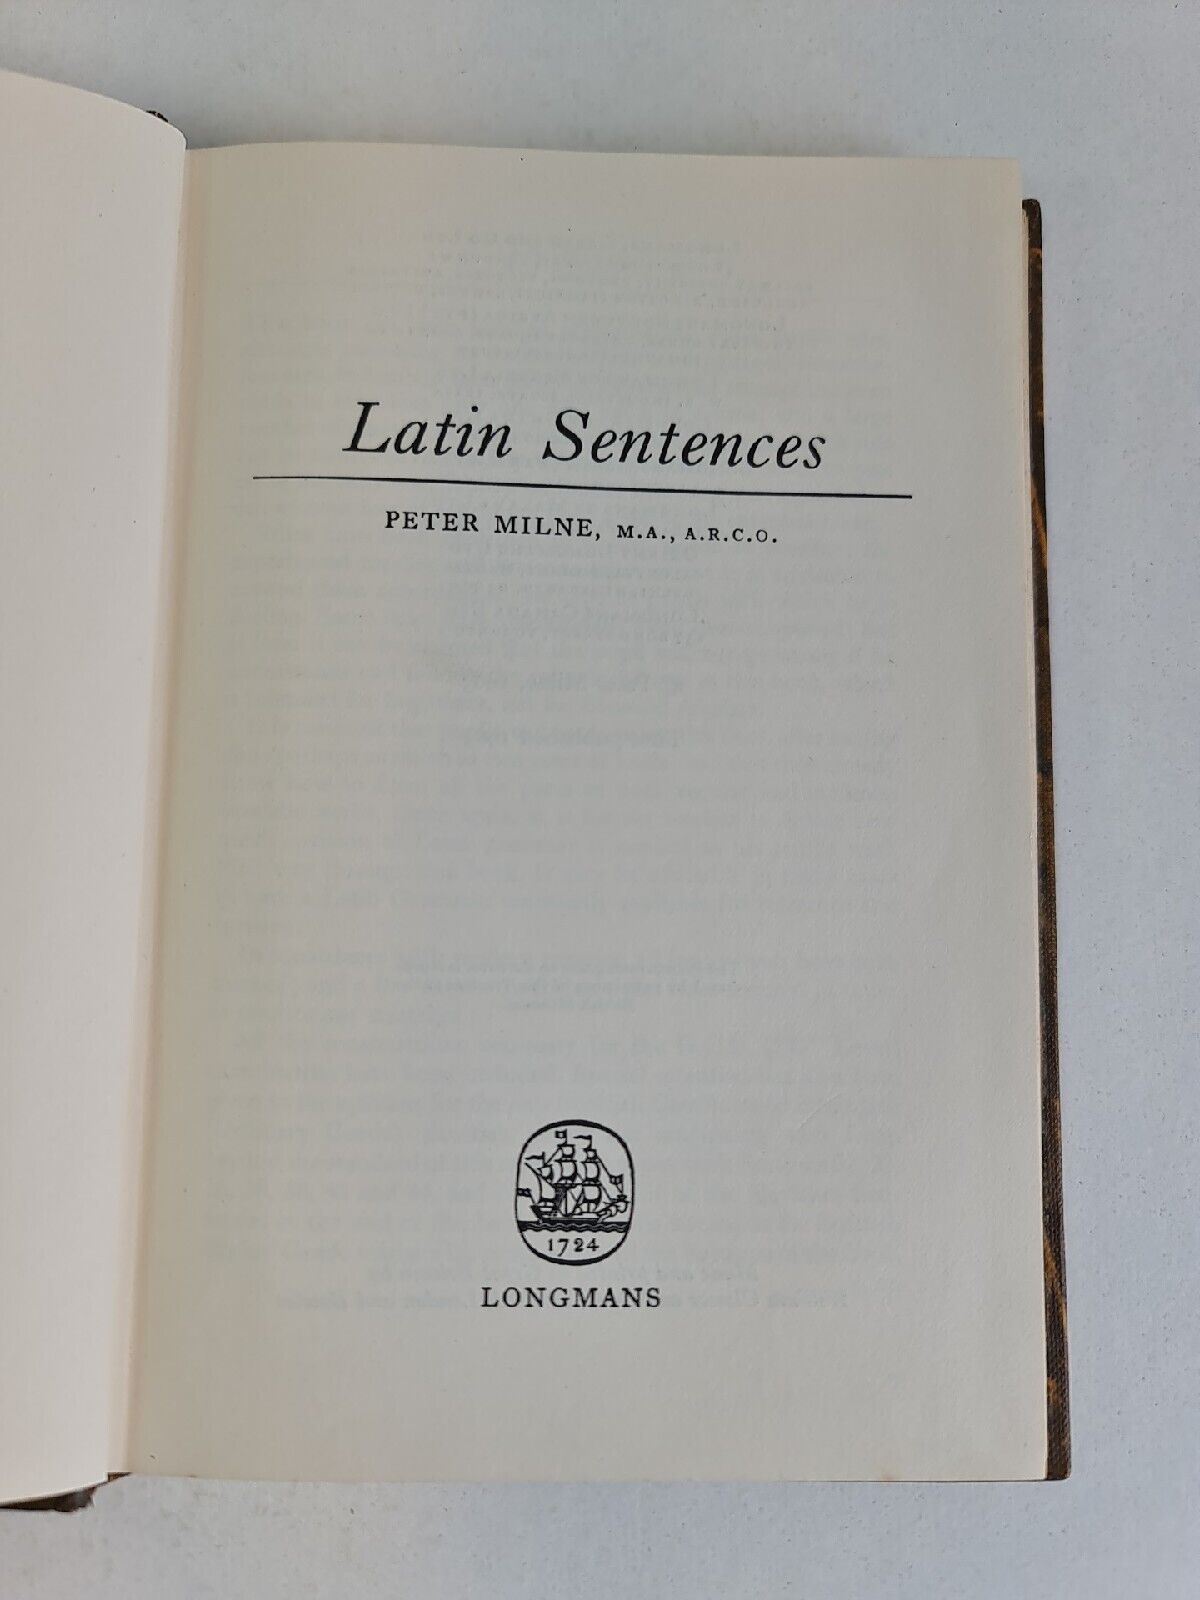 Latin Sentences by Peter Milne (1963)